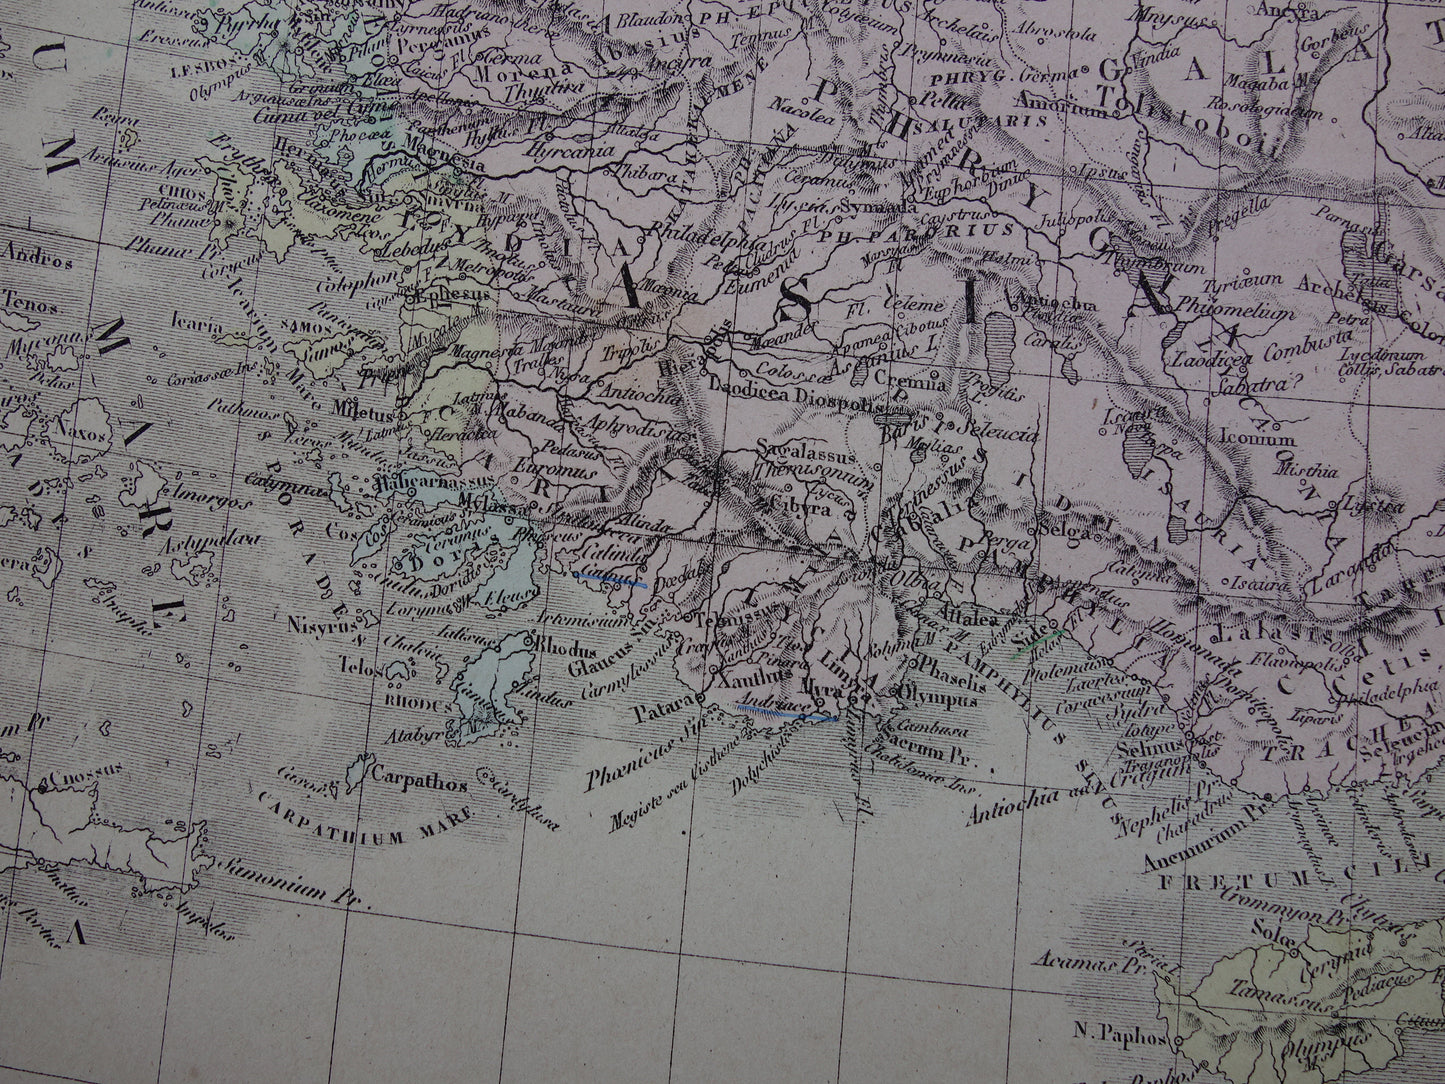 ASIA MINOR oude kaart van Turkije Perzië in de oudheid 1876 originele grote antieke landkaart Midden-Oosten geschiedeniskaart Perzische Rijk